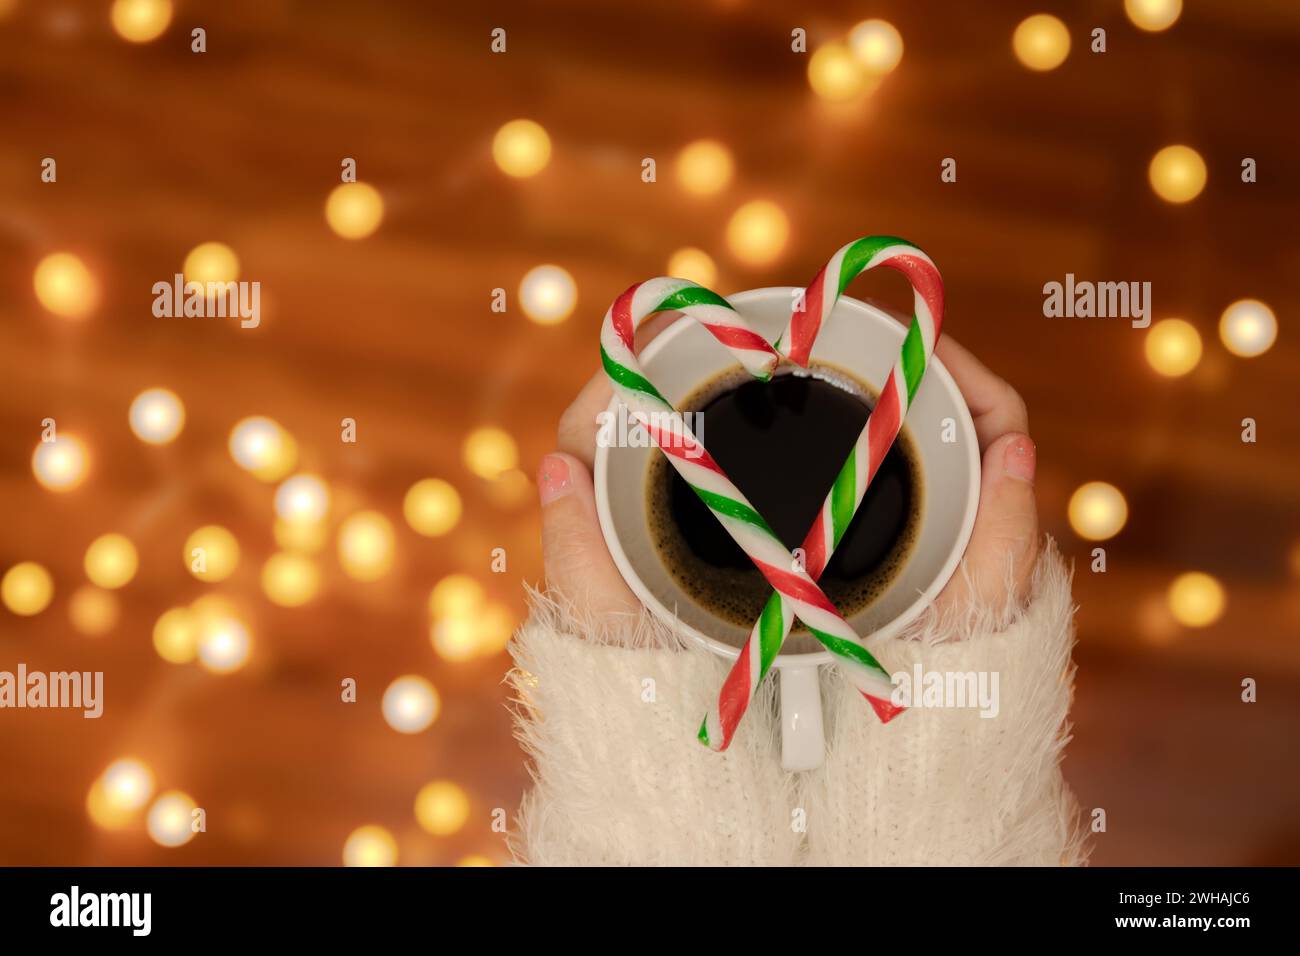 Donna mano con maglione che regge una tazza di caffè con canne di caramelle a forma di cuore sulla parte superiore, decora con luce bokeh sfocata per la festa di San Valentino Foto Stock